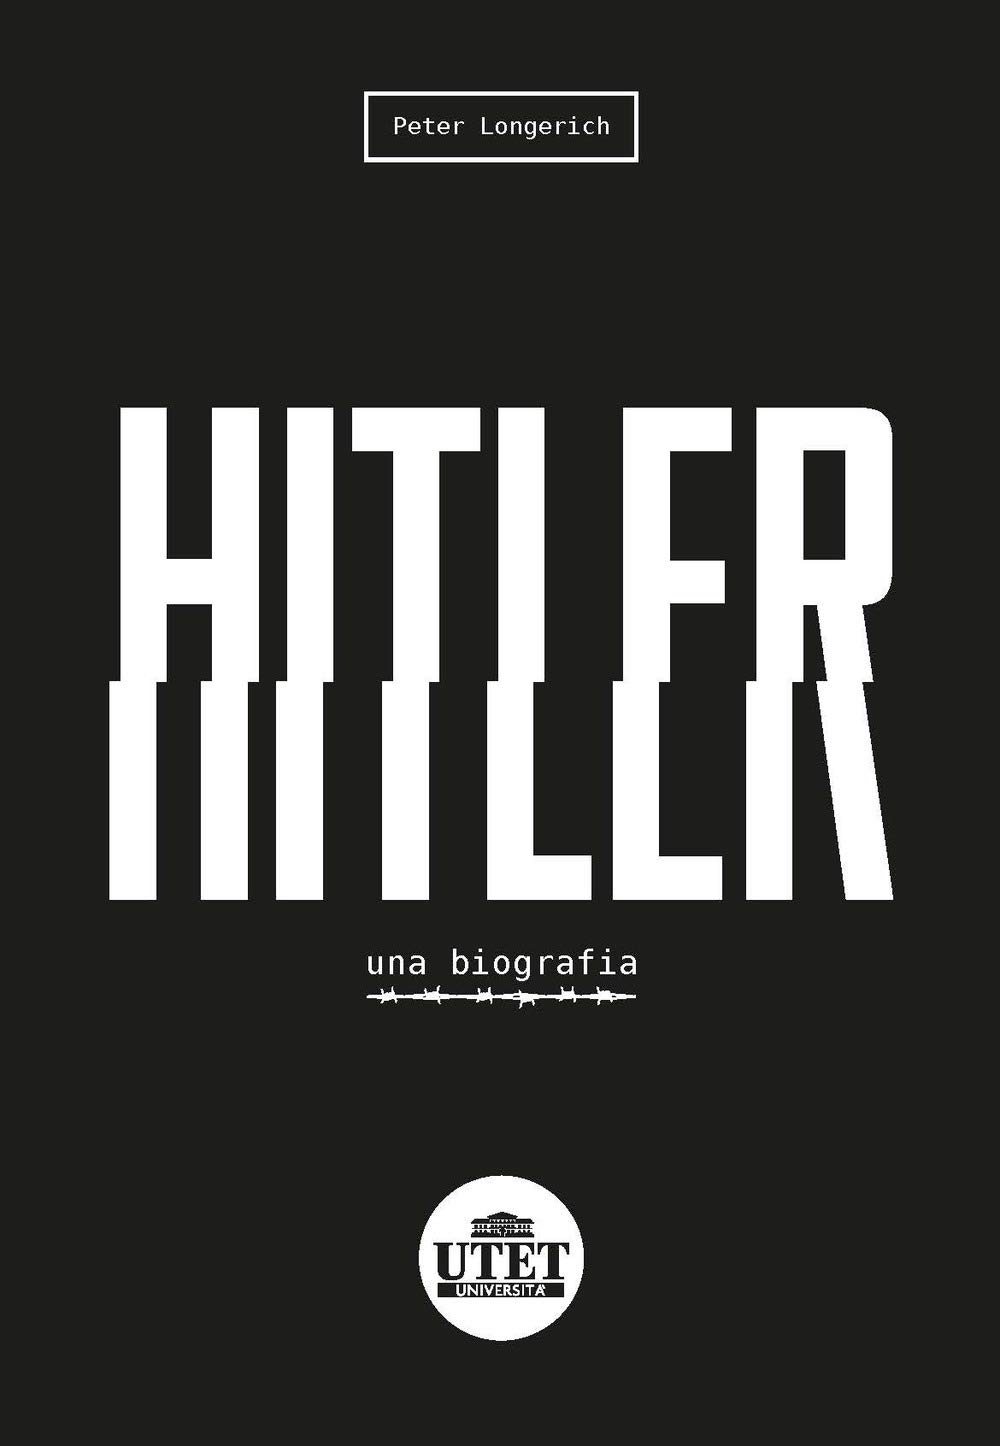 Longerich Hitler